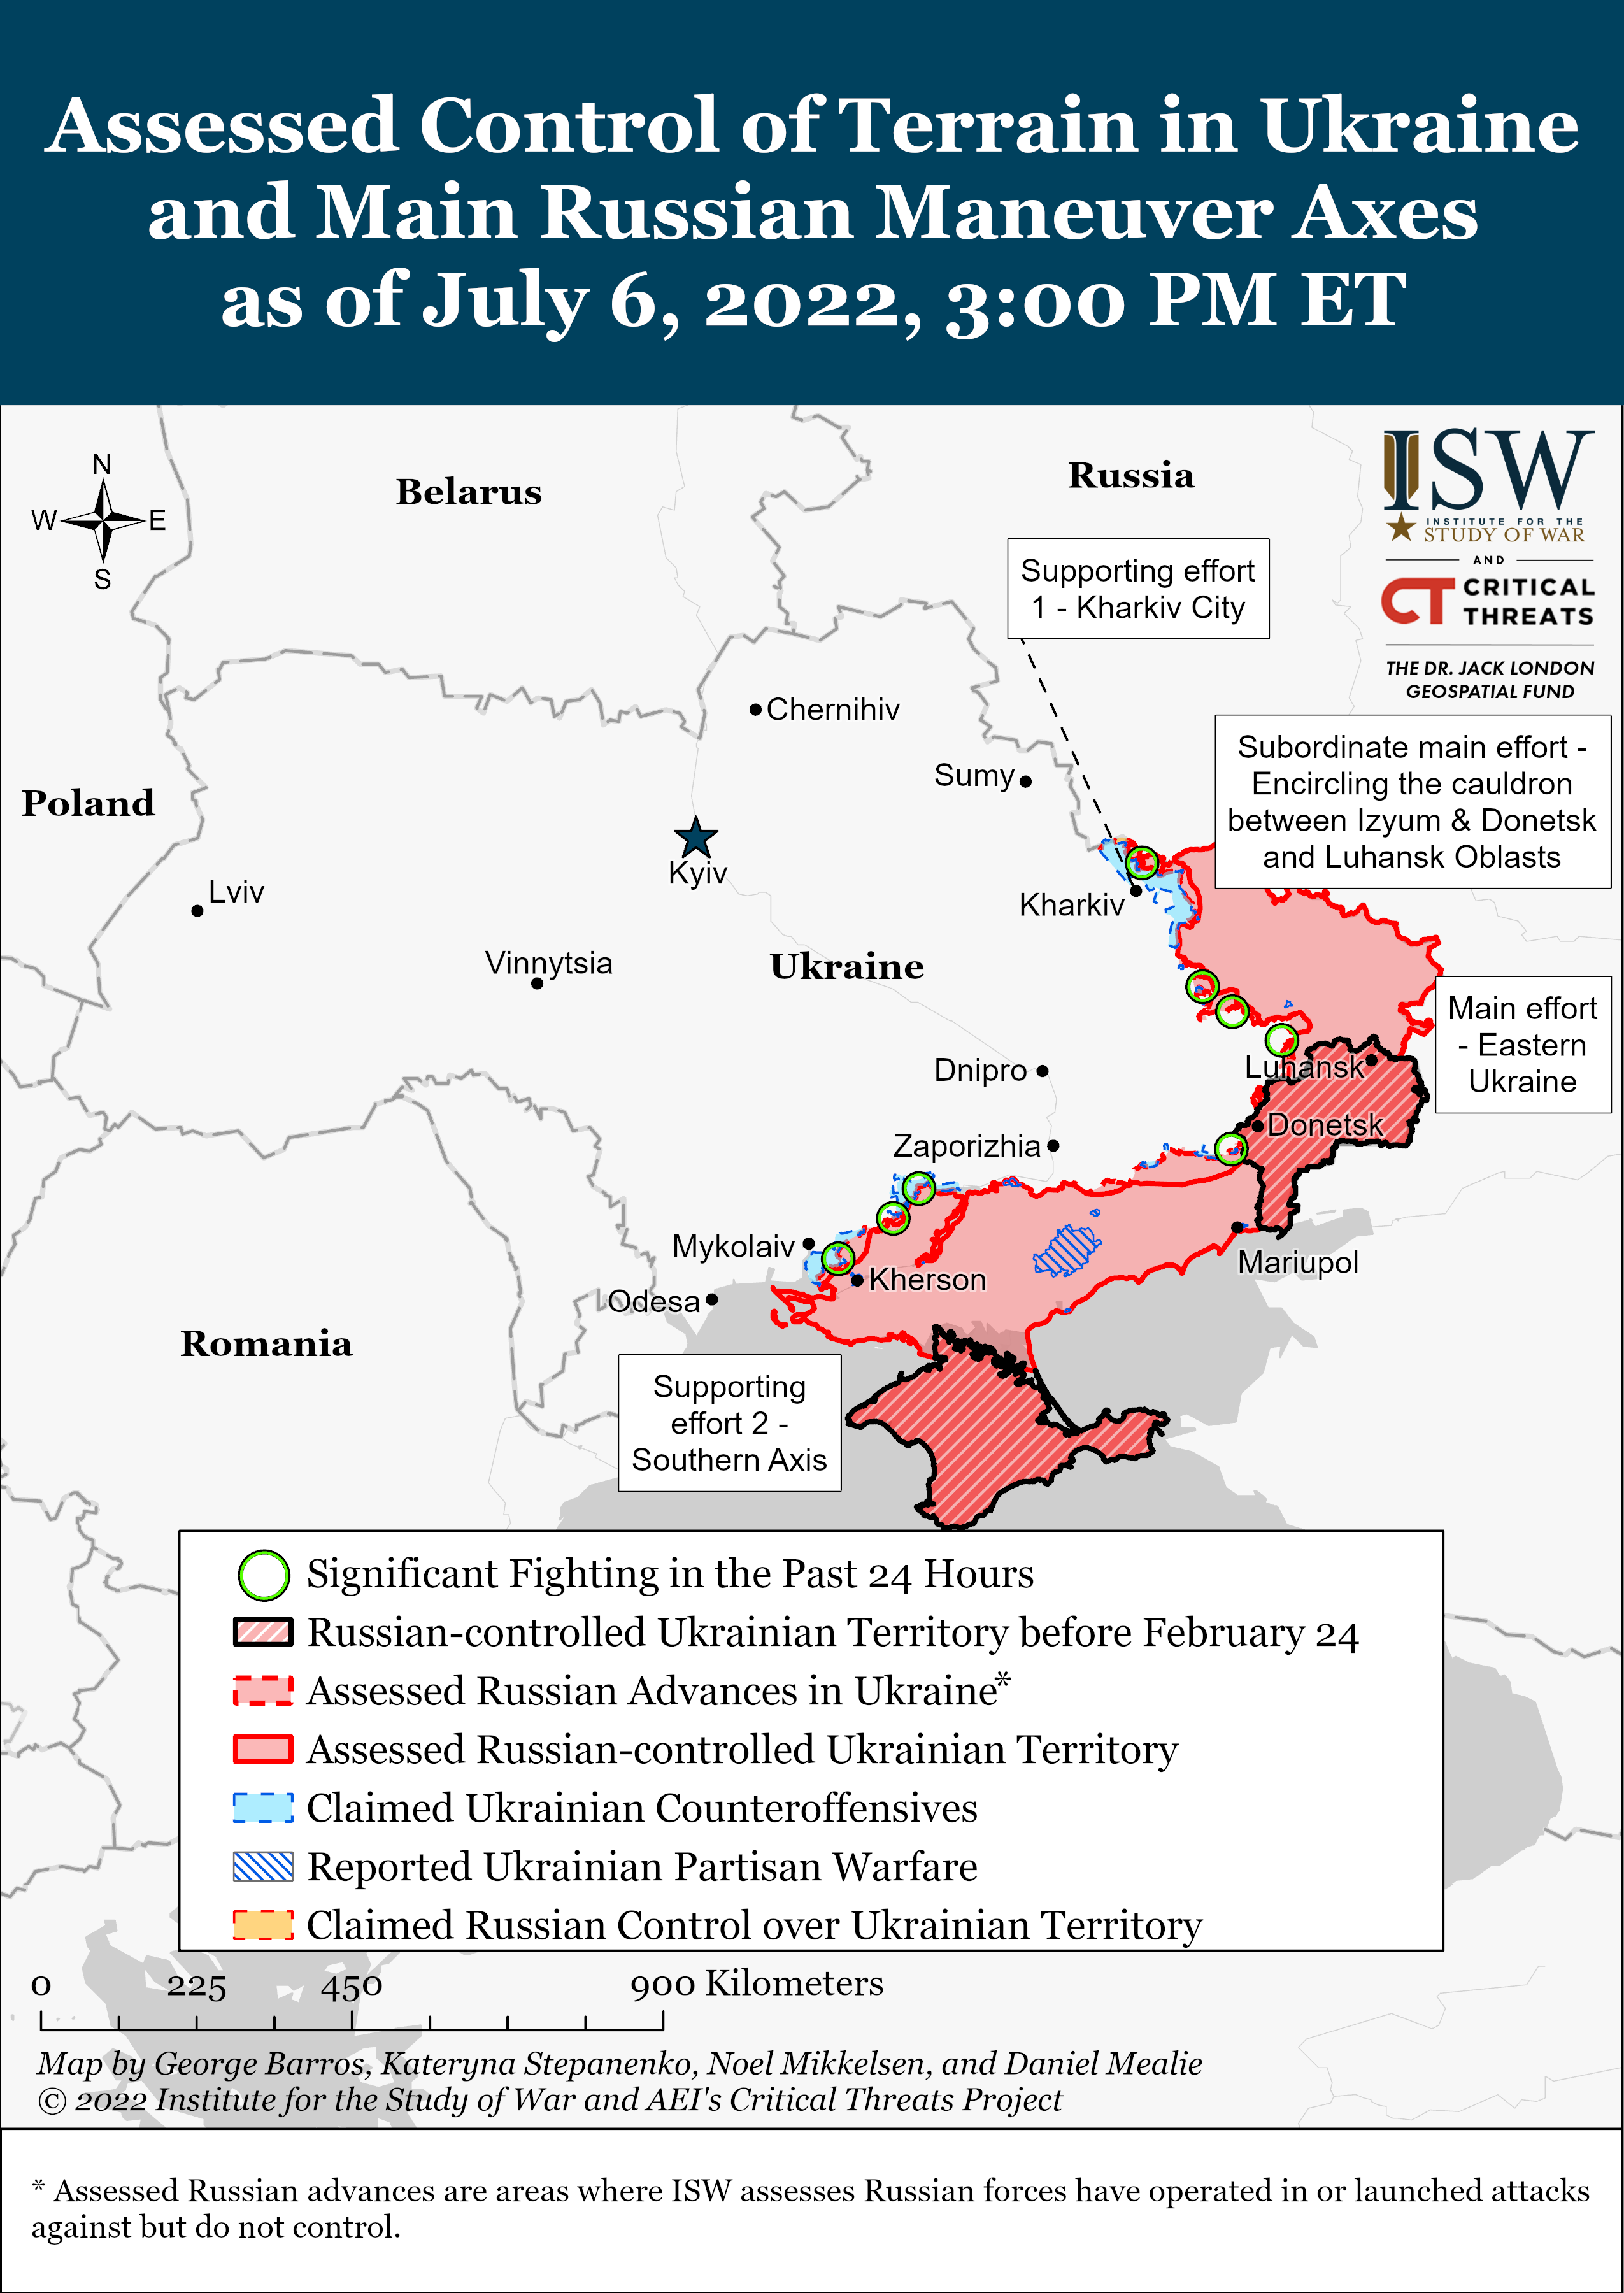 Wie ist der aktuelle Stand (06.07.22) der russischen Truppen in der Ukraine?